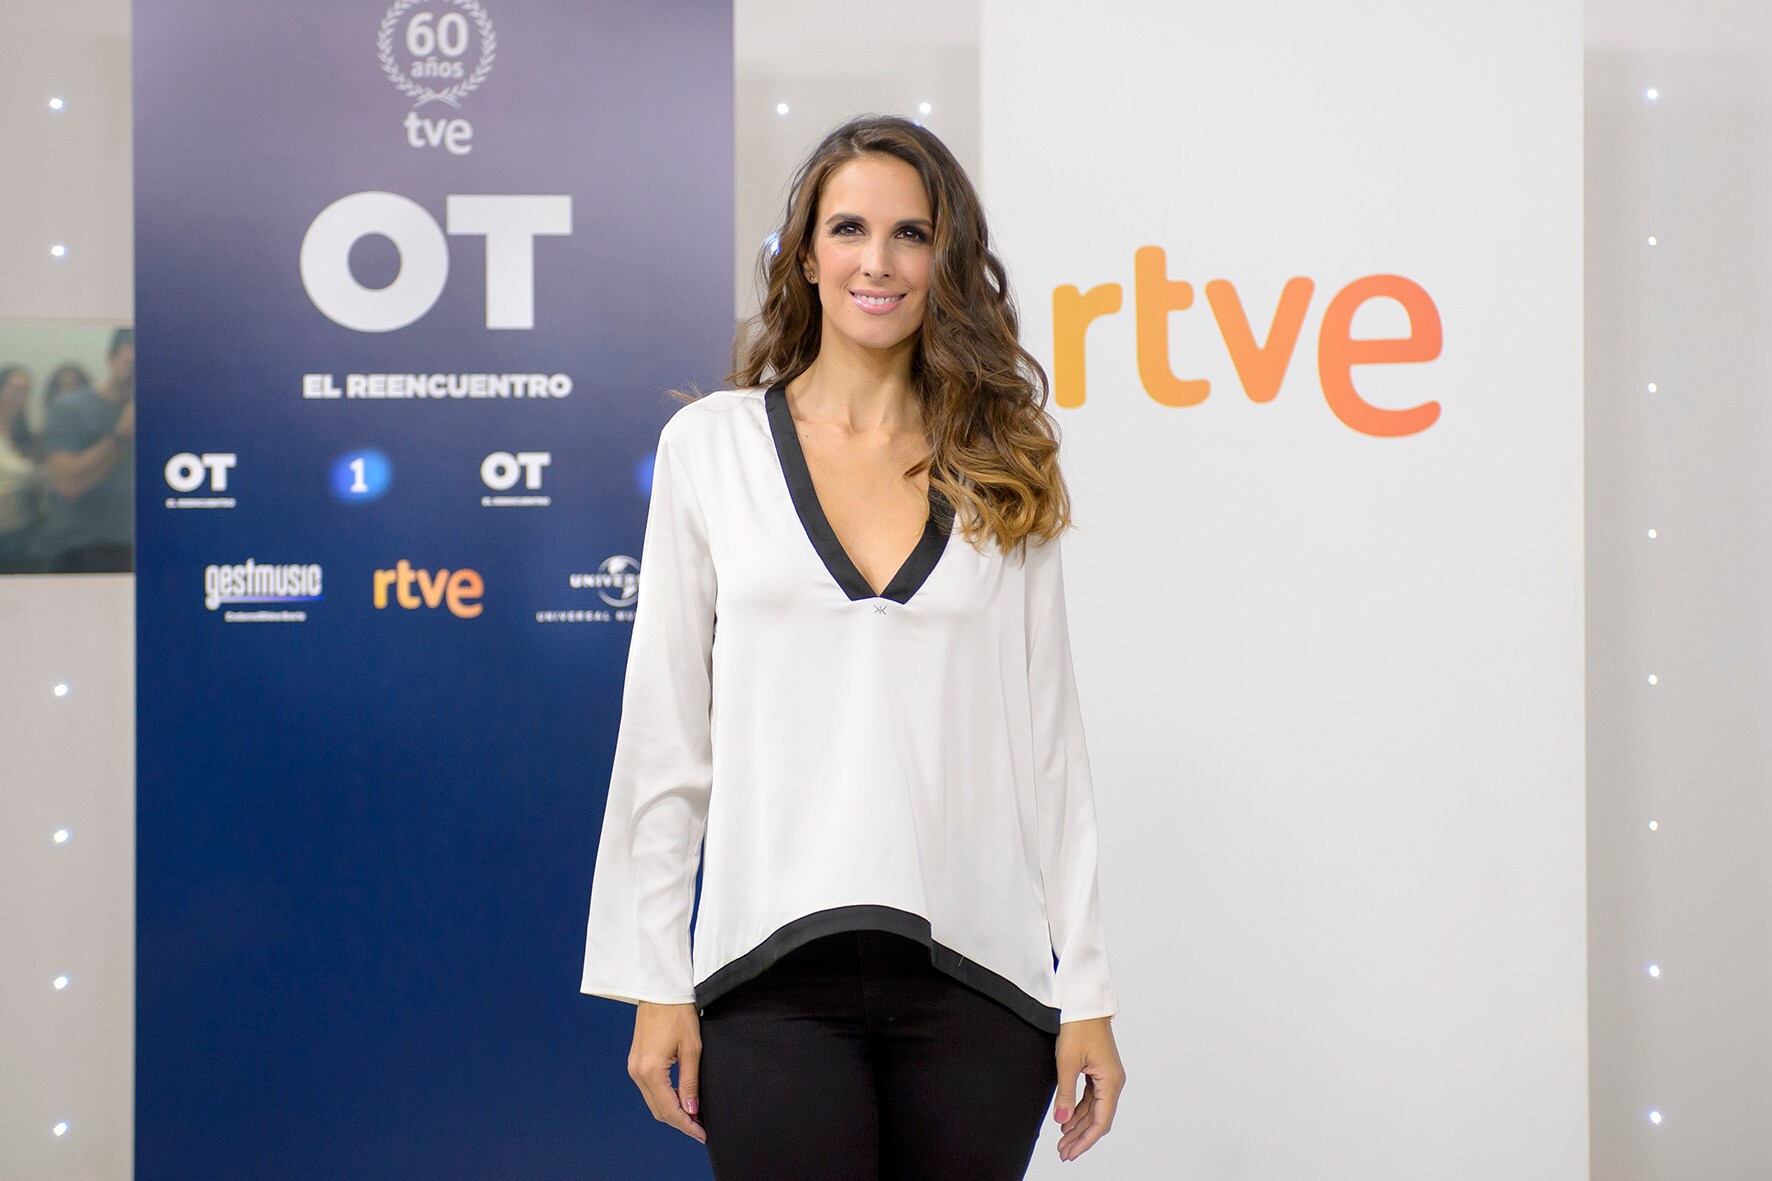 Nuria Fergó en la presentaciñon de "OT: El reencuentro"